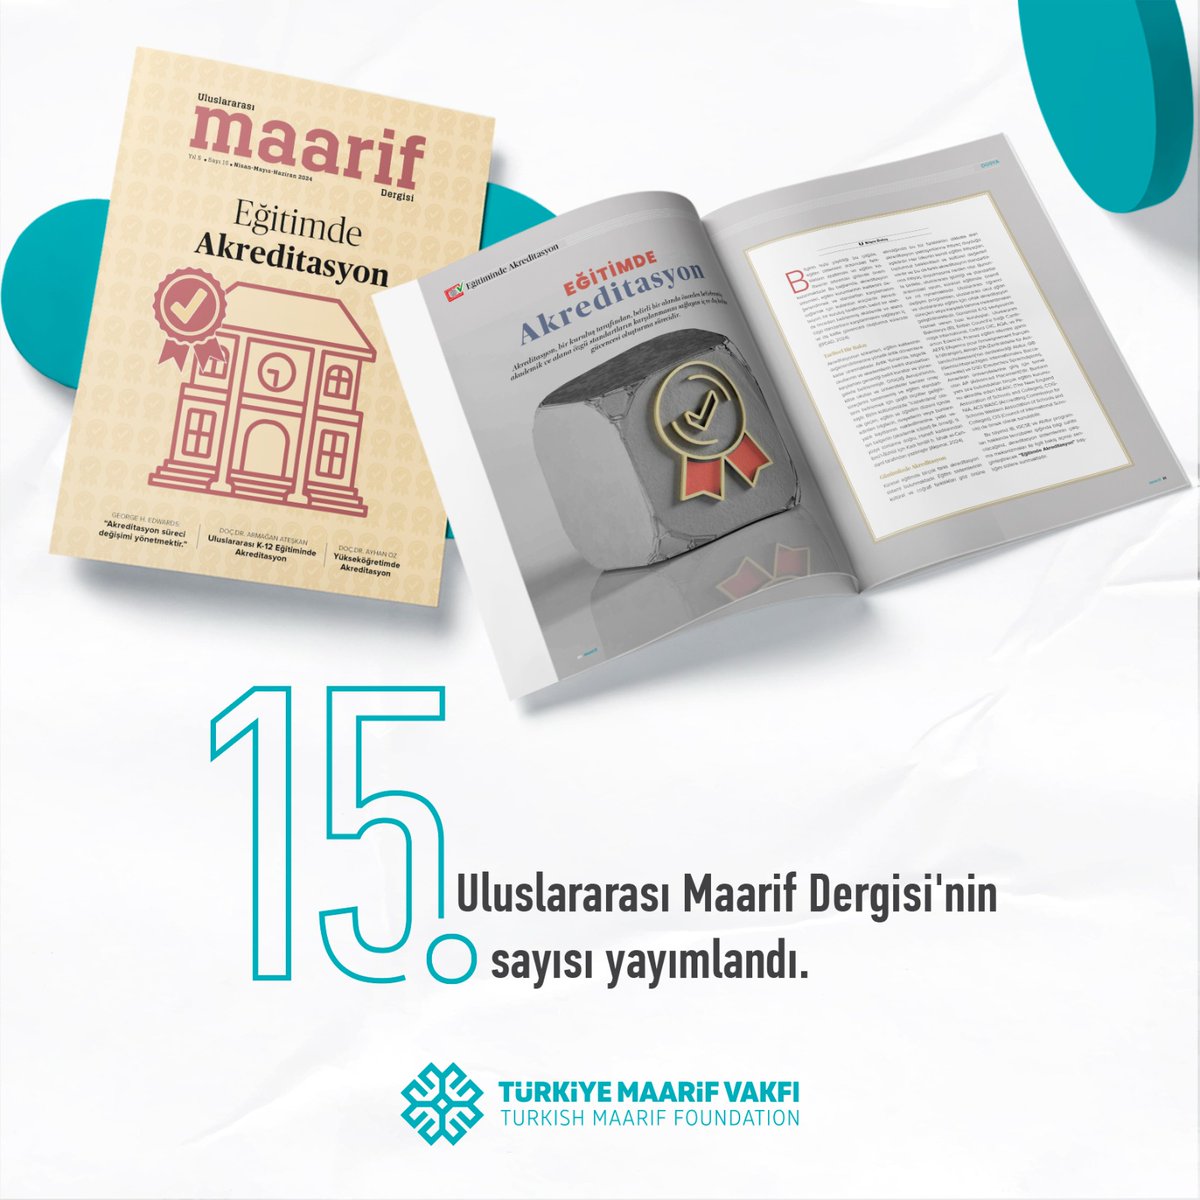 Uluslararası Maarif Dergisi'nin 1⃣5⃣.sayısı yayımlandı. Dergimizin bu sayısında ❝Eğitimde Akreditasyon❞ konusu ele alınıyor. Okumak için; 🔗 turkiyemaarif.org/editions/egiti… #MaarifDergisi